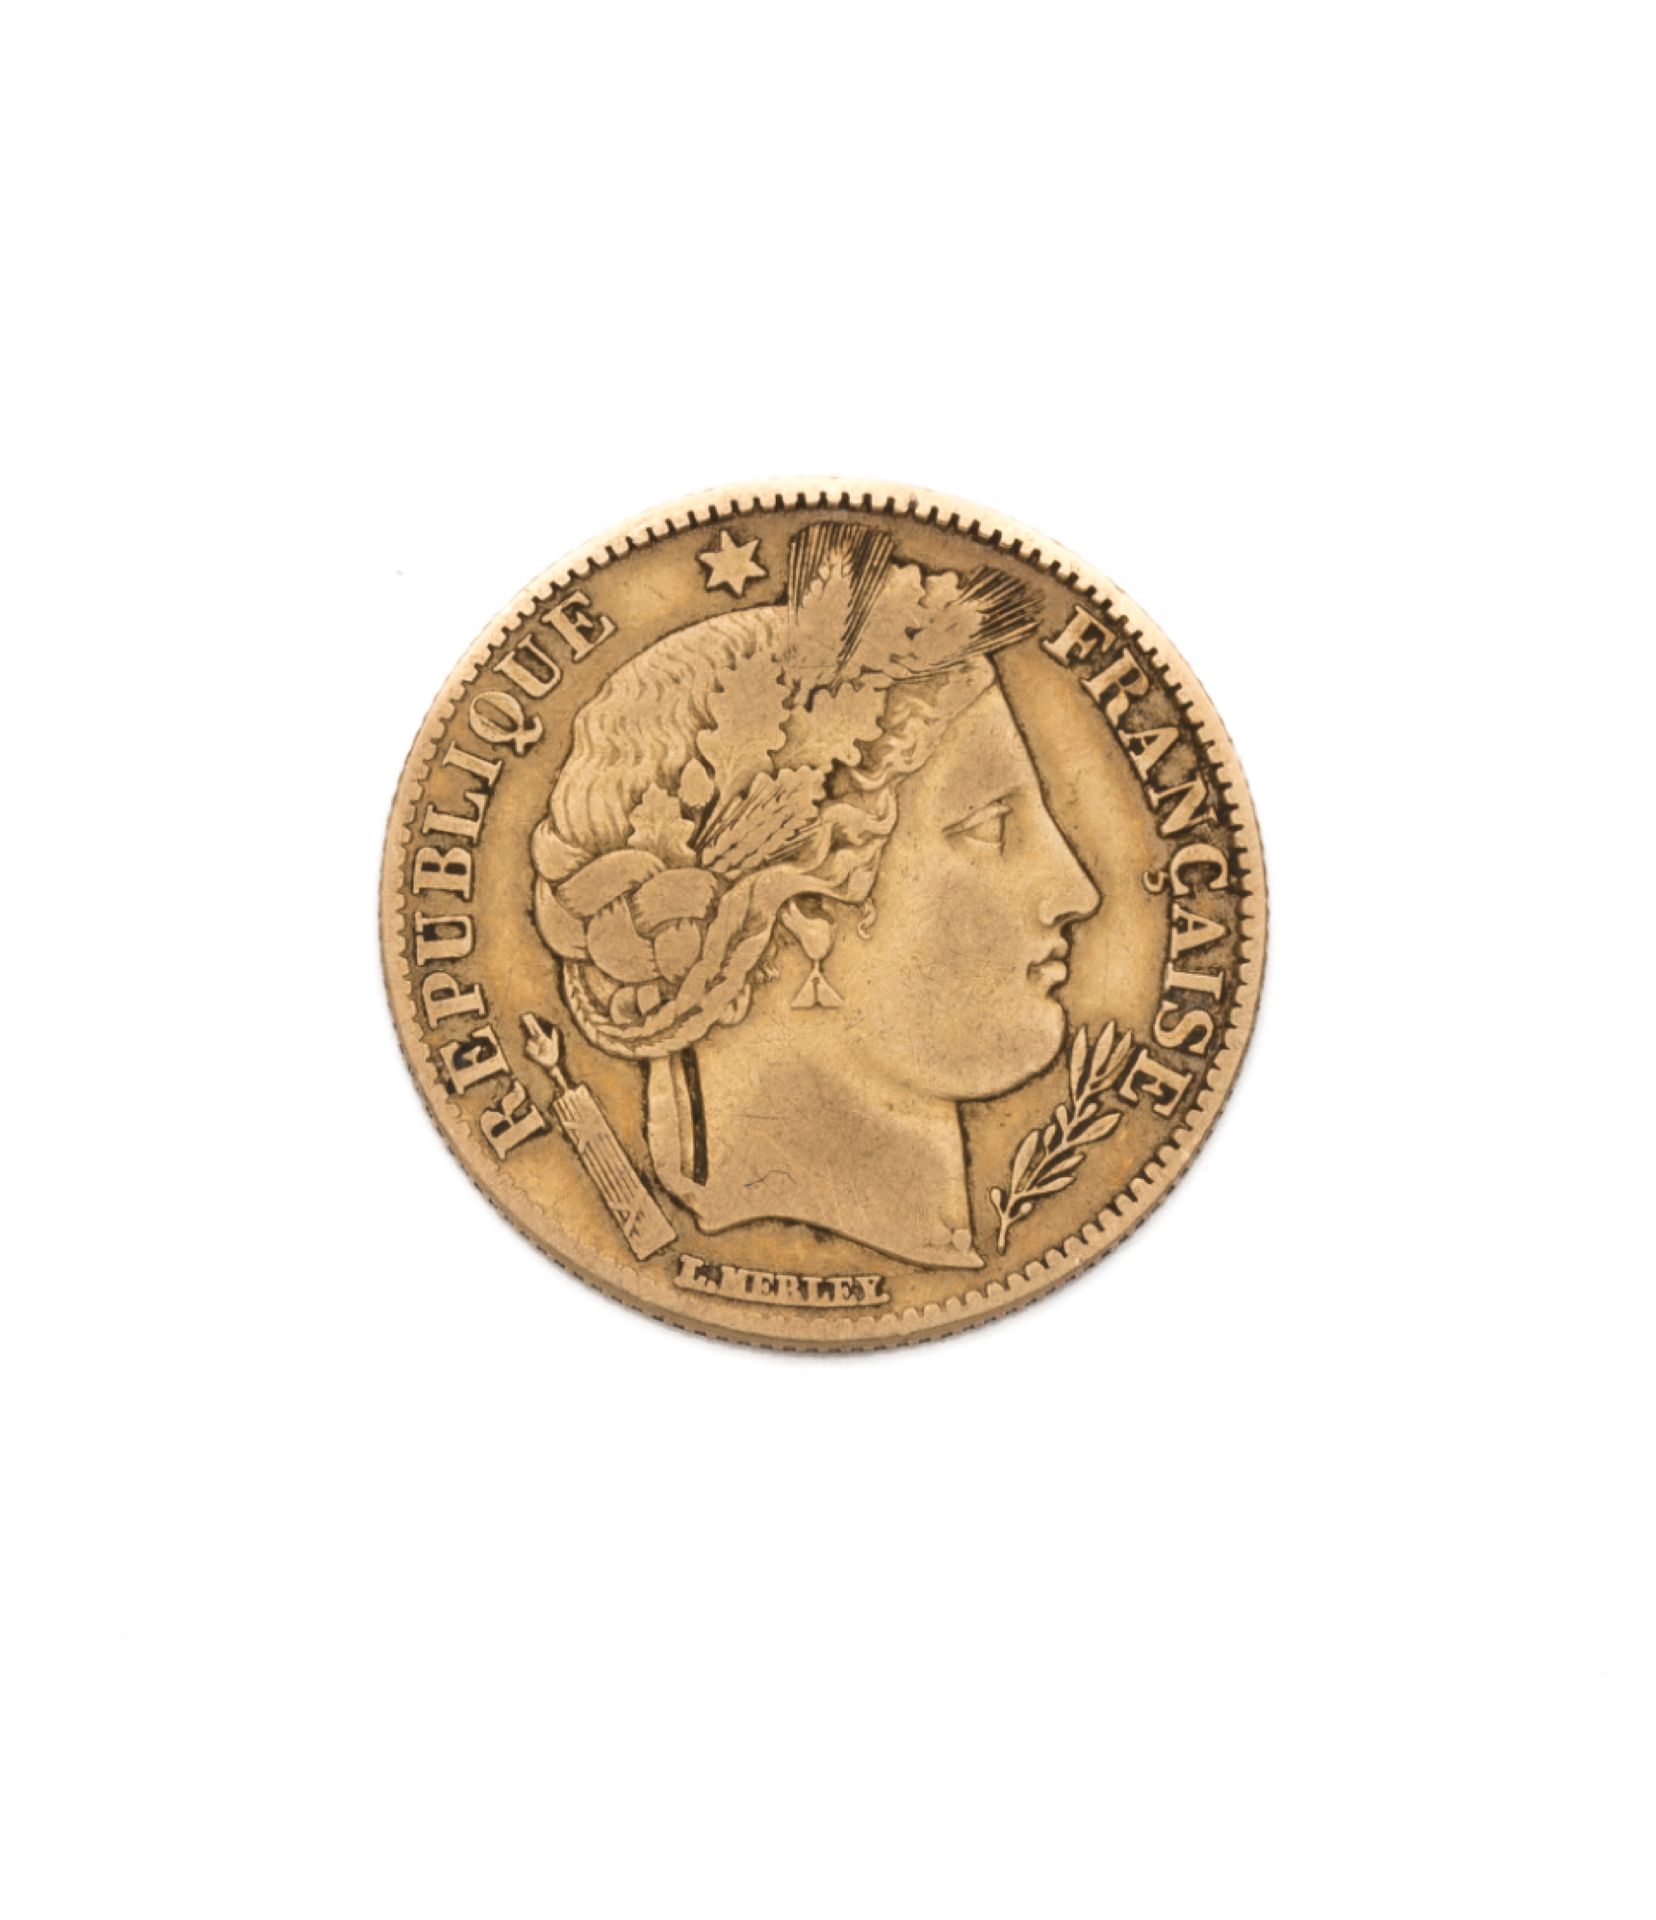 Null Zweite Republik
10 Goldfranken, Ceres. 1851 A
Gewicht: 3,15 g